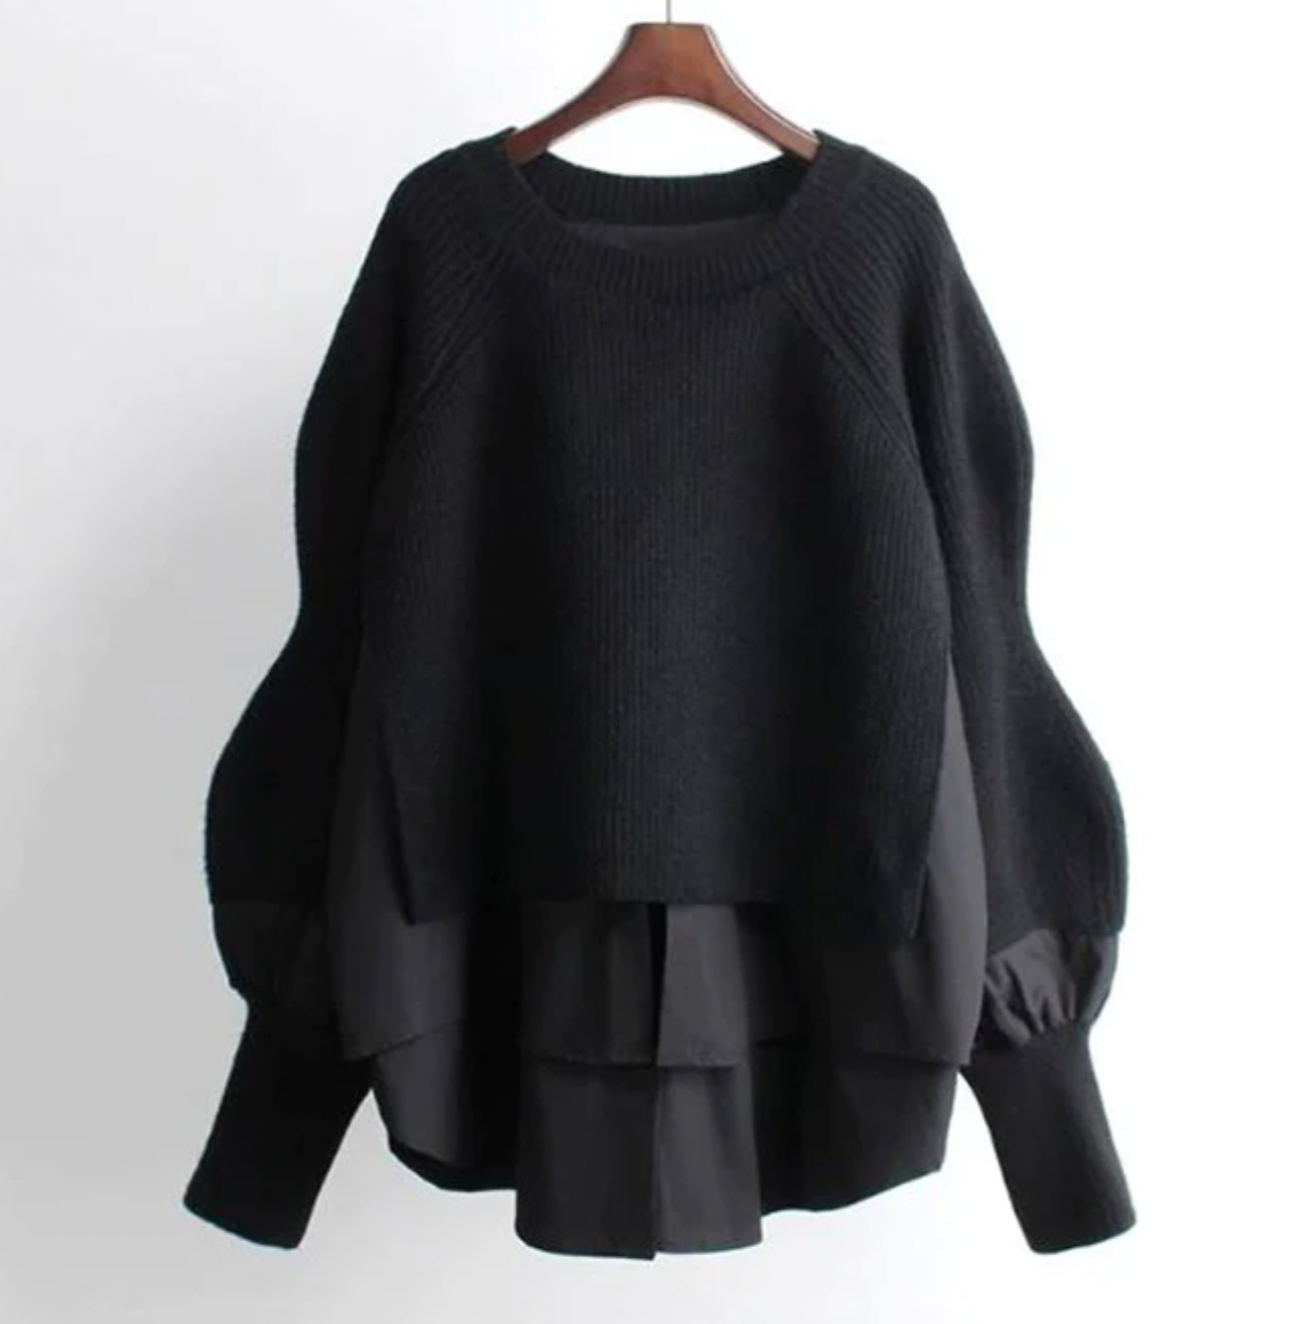 VANY - Warmer stylischer Pullover für den Herbst und Winter